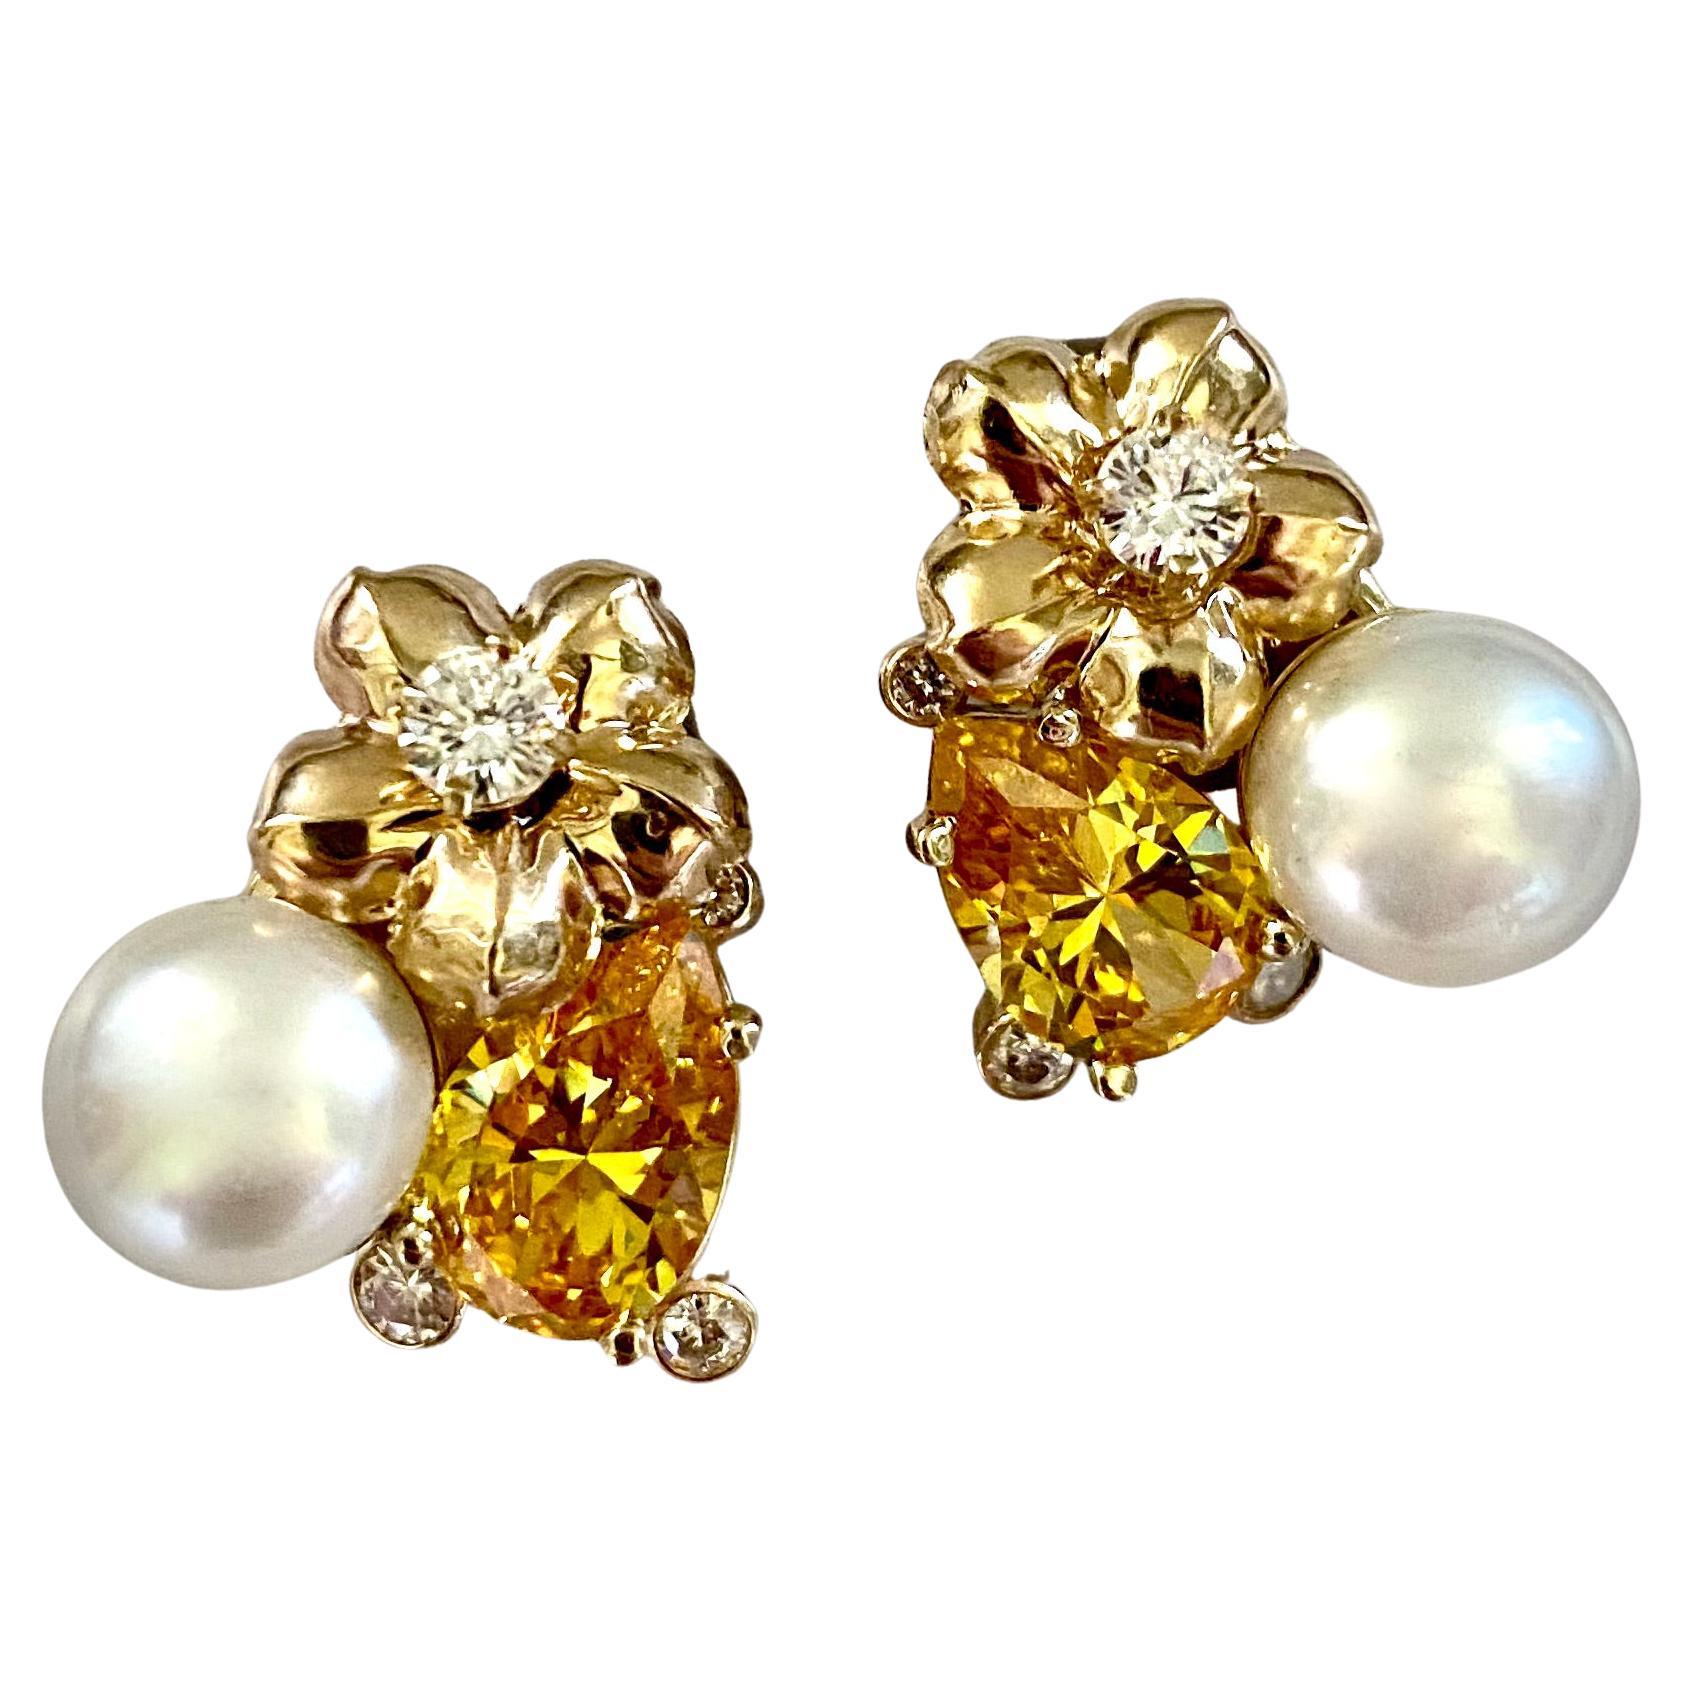 Michael Kneebone Golden Beryl Pearl Diamond Flower Cluster earrings